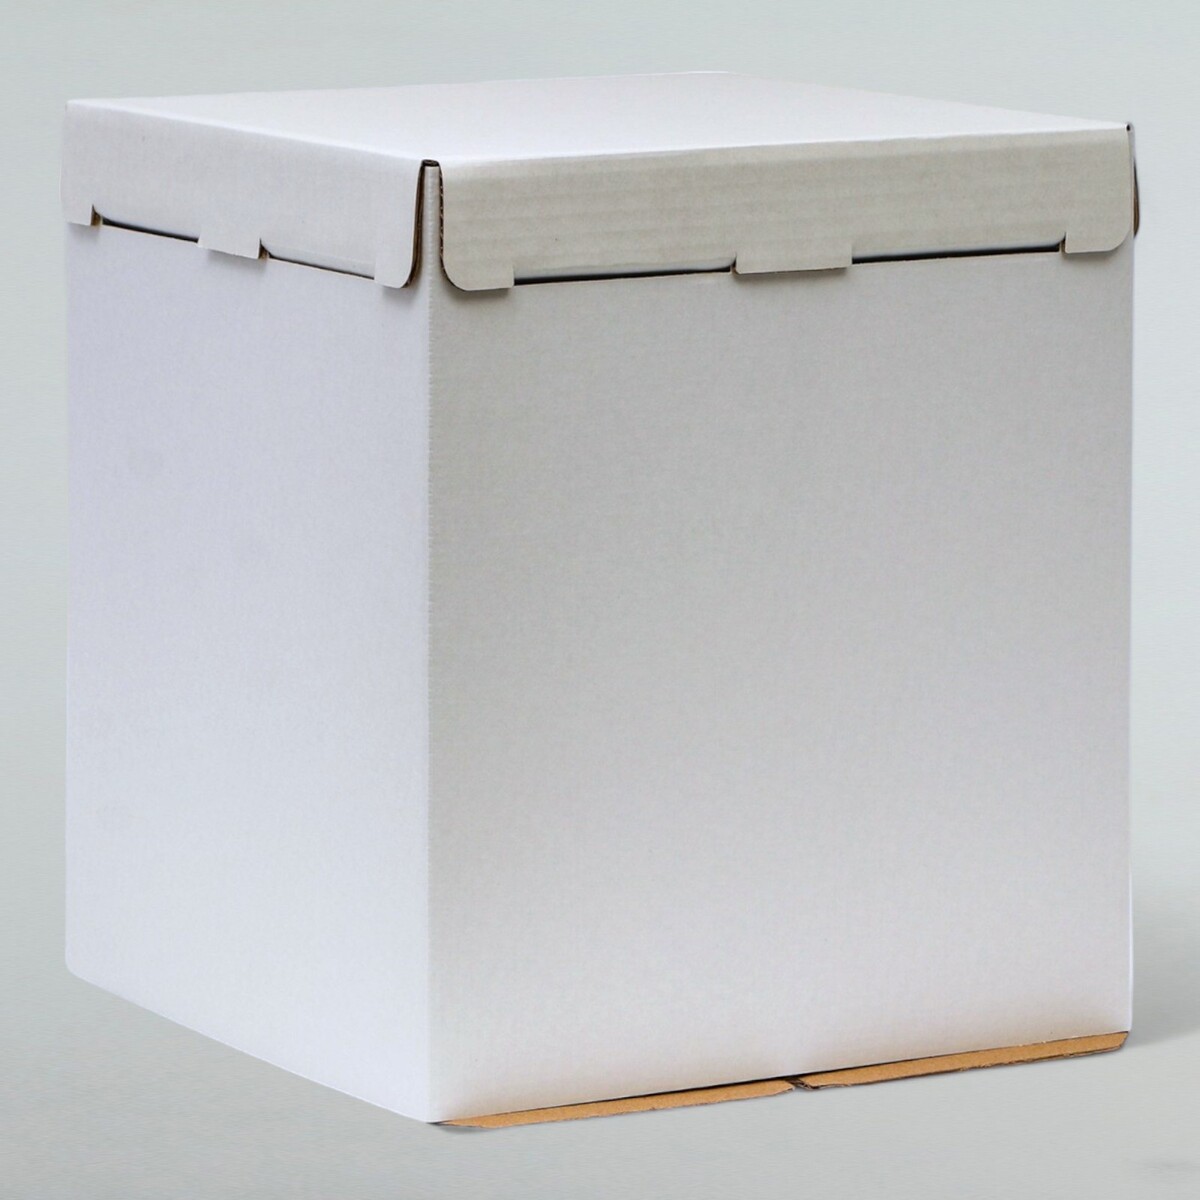 Коробка под торт, без окна, белая, 26 х 26 х 30 см